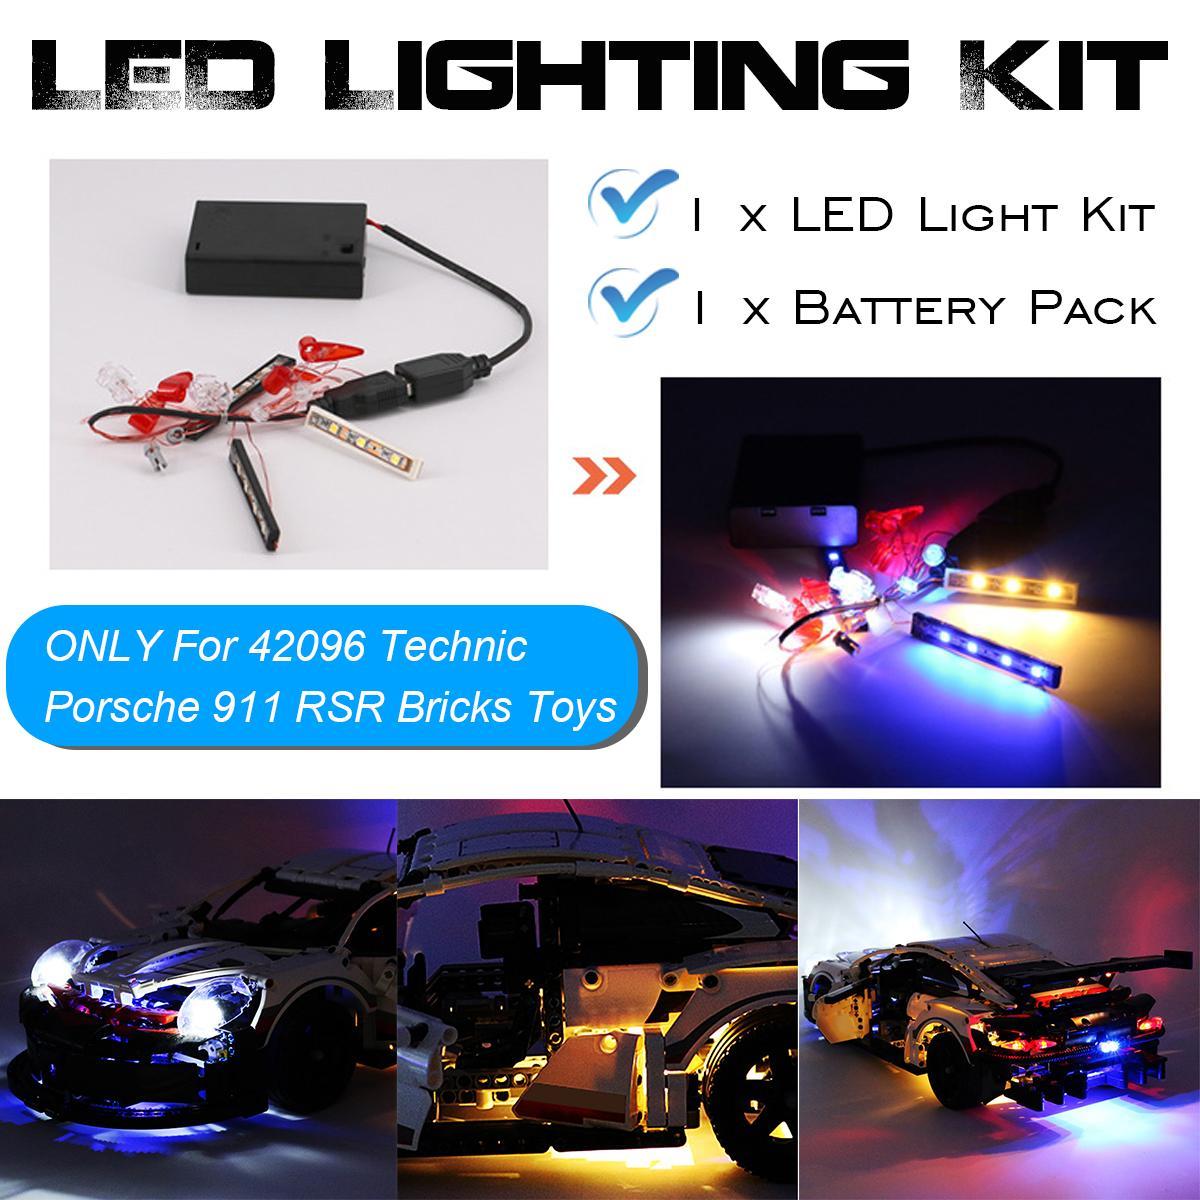 DIY LED Light Lighting Kit ONLY For LEGO 42096 Technic RSR Light Bricks